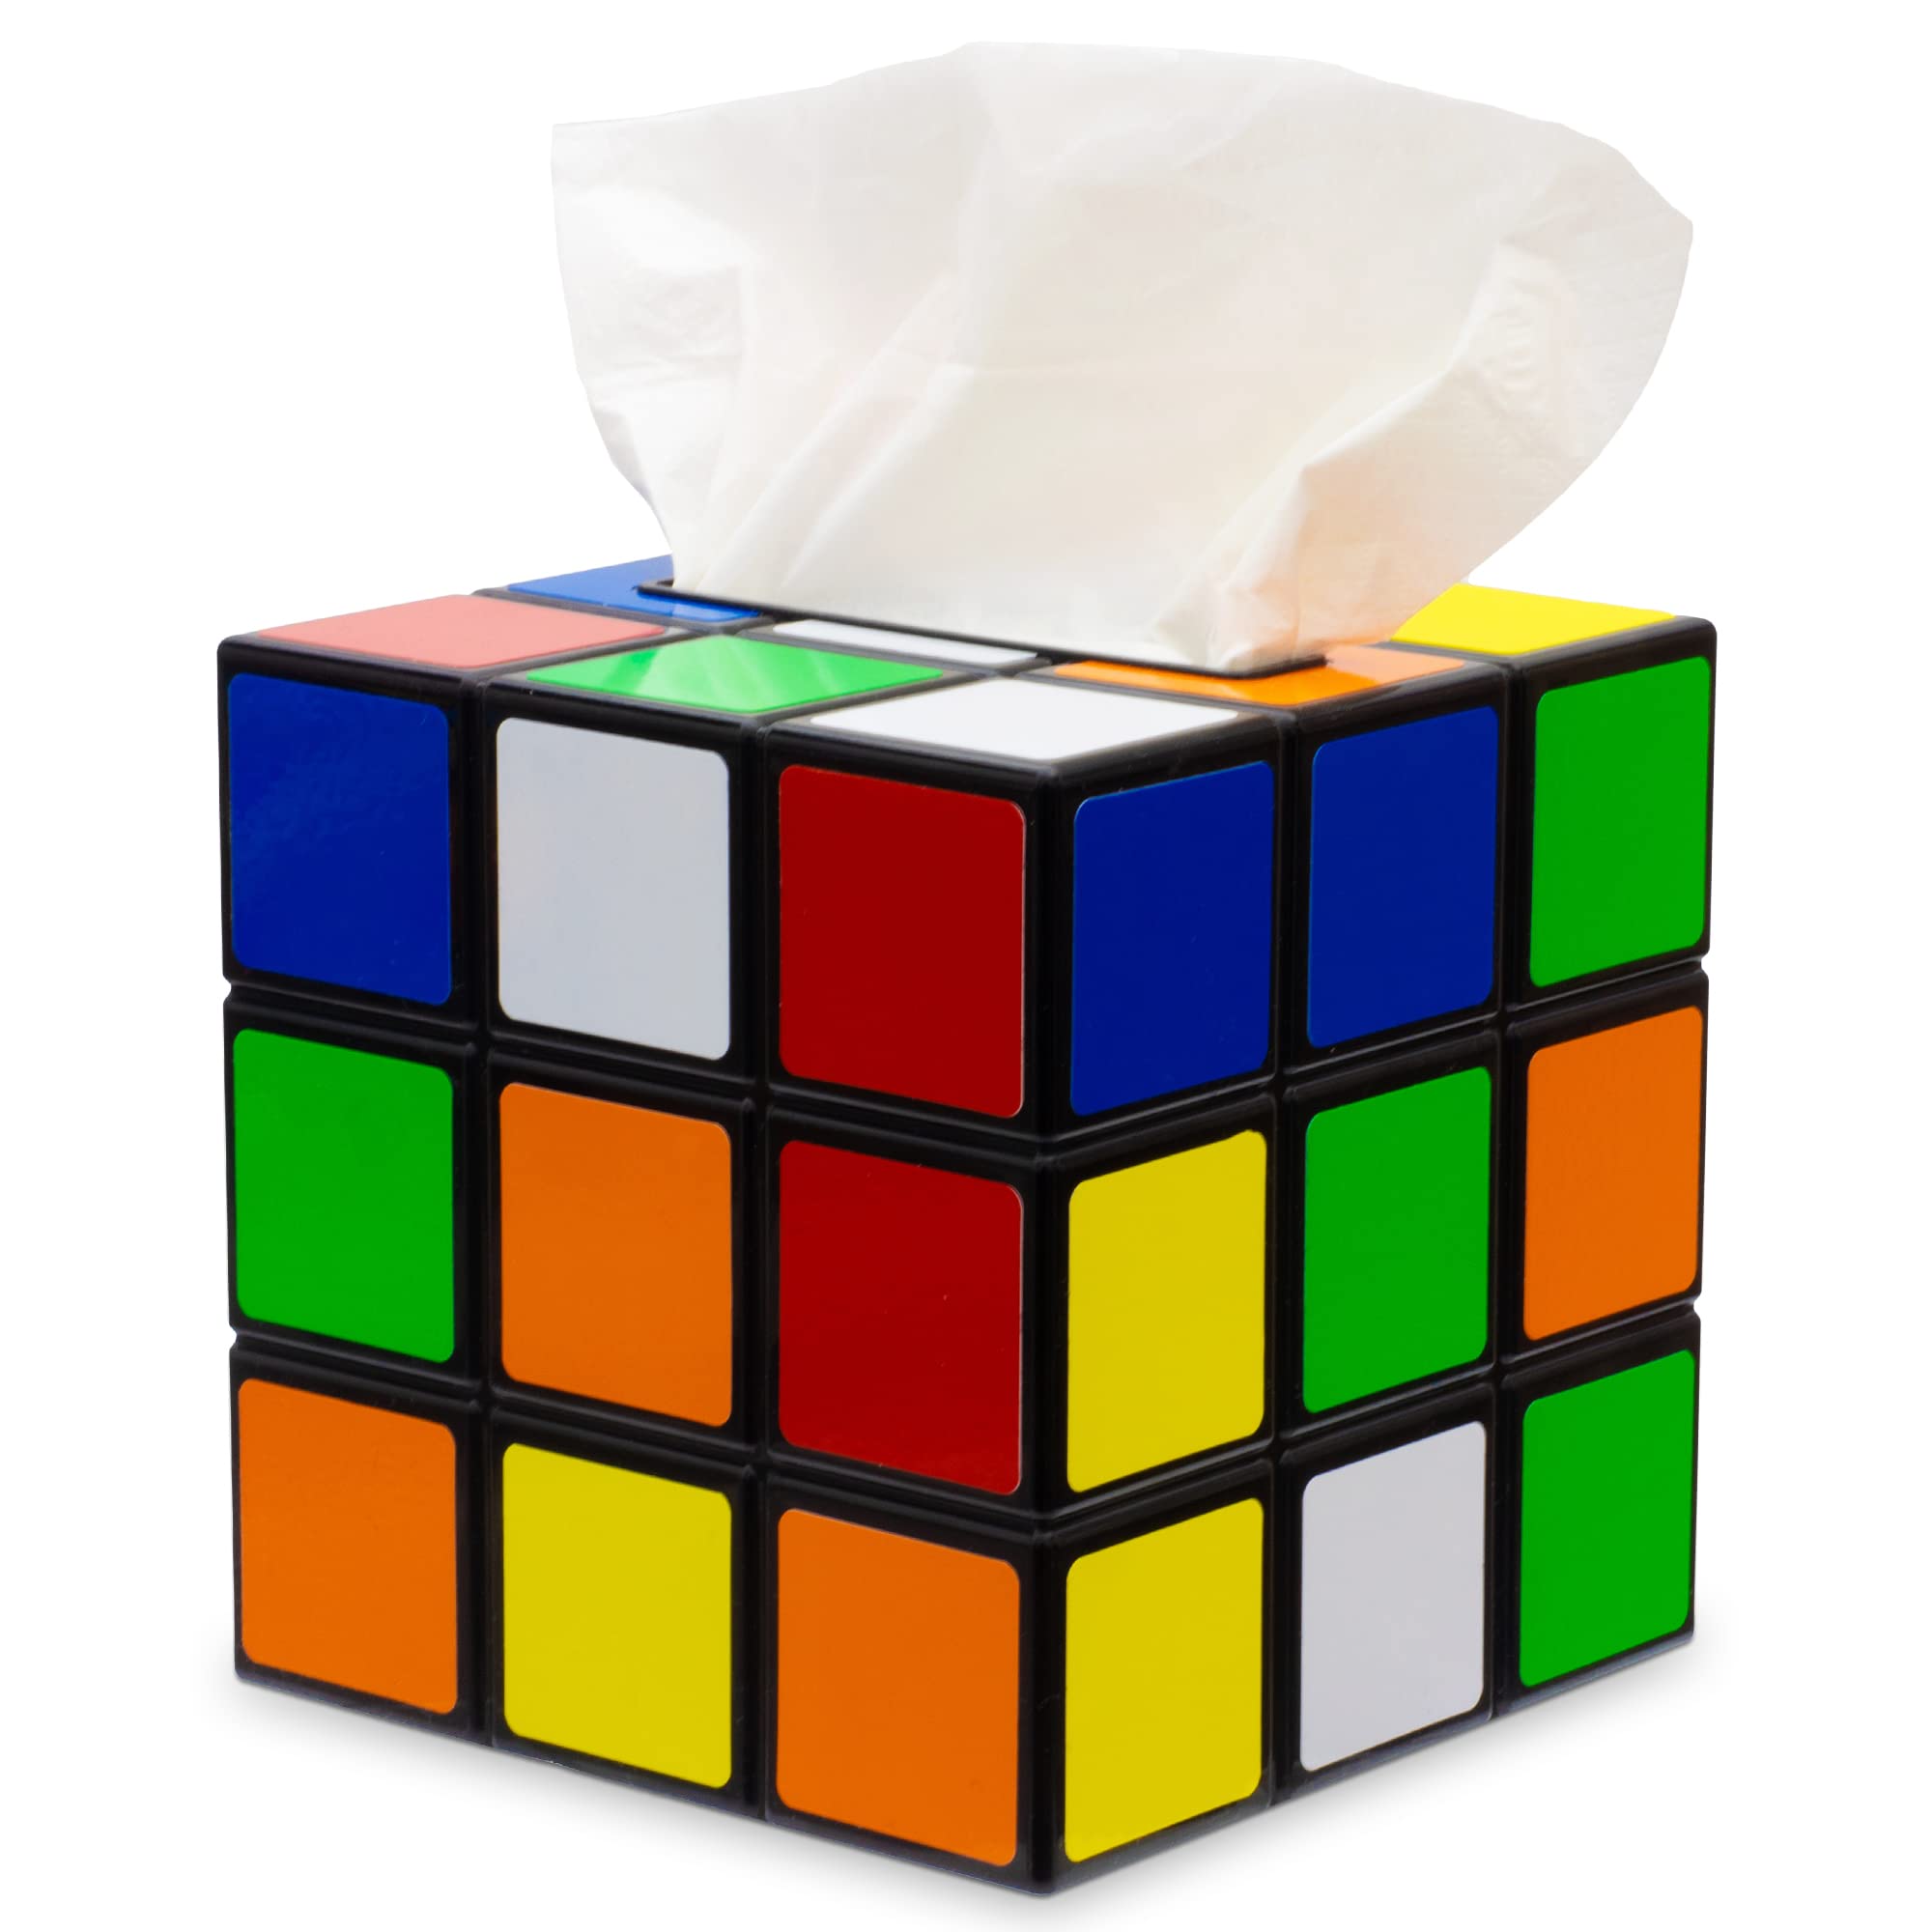 getDigital Zauberwürfel Taschentuchbox - Magic Cube Taschentuch-Spender, Ausgefallene Deko-Box - Kunststoff, Bunt, 14 x 14 x 14 cm